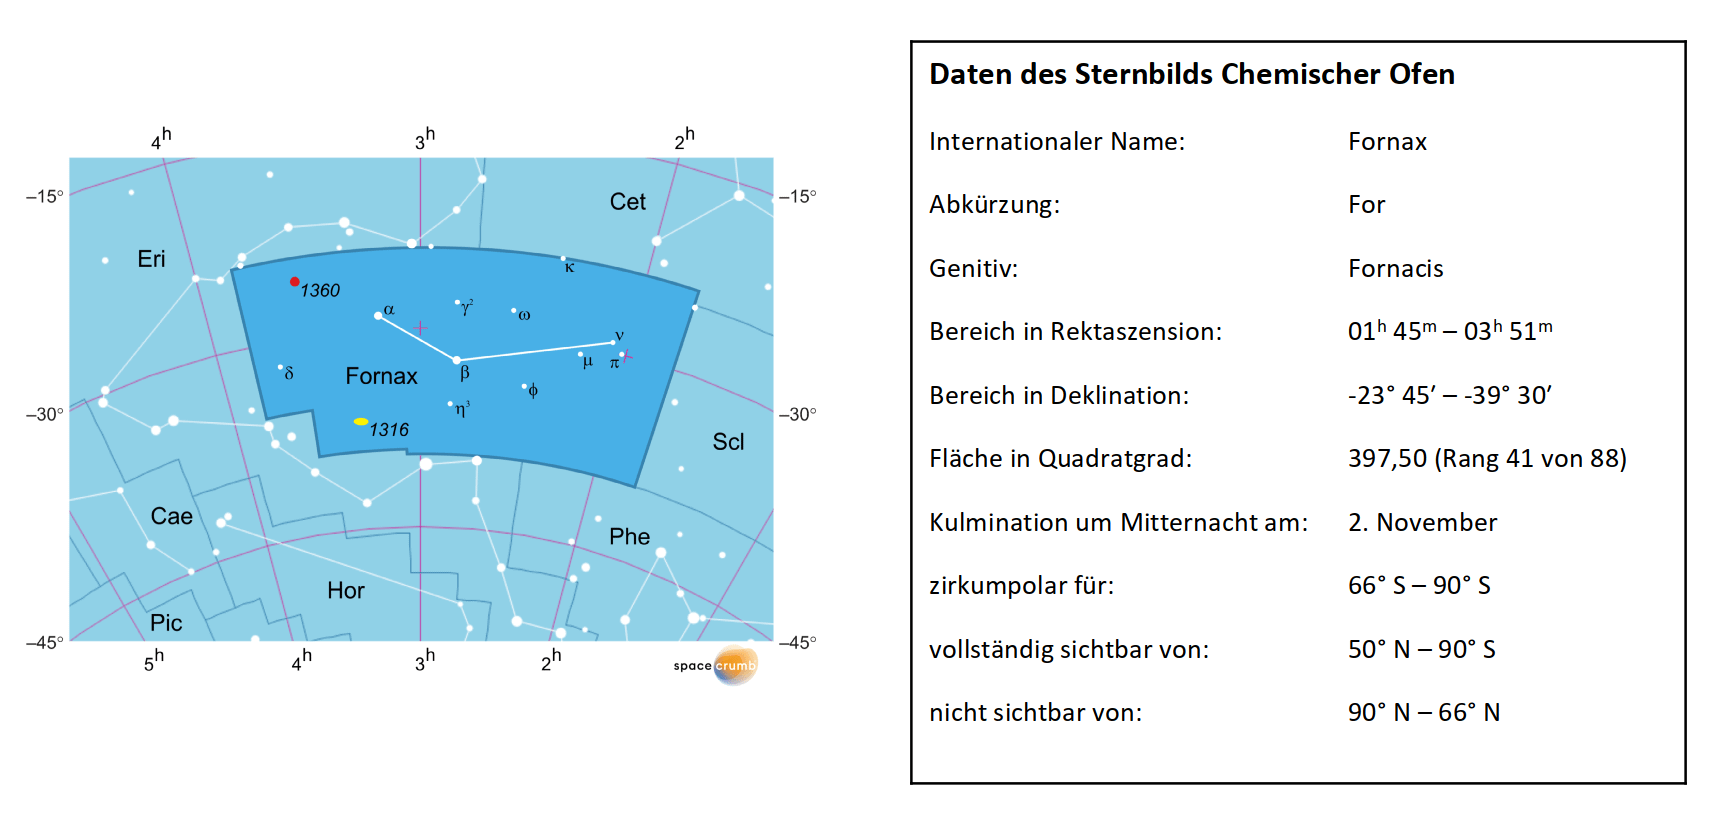 Links zeigt eine mit Koordinaten versehene Karte eines Himmelsausschnitts weiße Sterne auf hellblauem Hintergrund. Die Fläche, die das Sternbild Chemischer Ofen einnimmt, ist dunkelblau hervorgehoben. Eine Tabelle rechts gibt wichtige Daten des Sternbilds an.